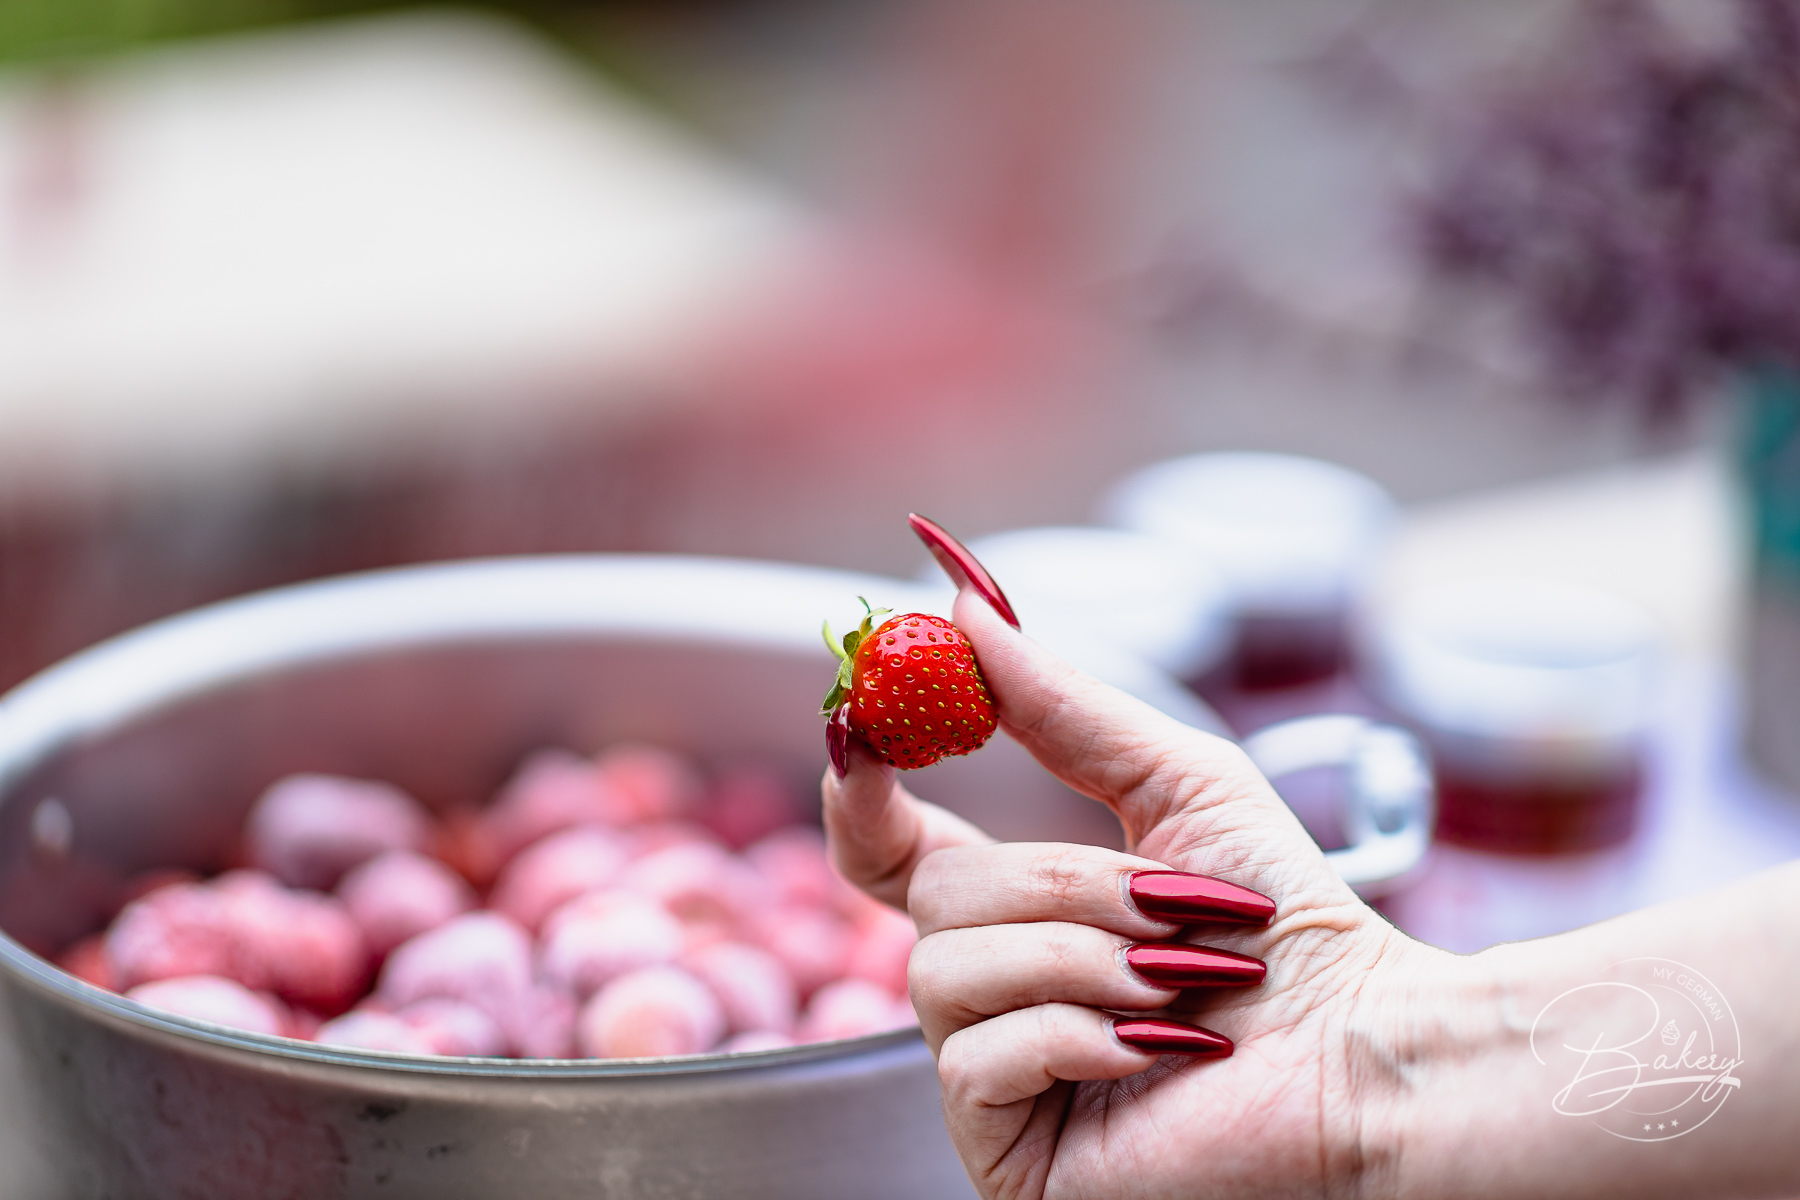 Erdbeermarmelade Rezept - ganz schnell selbst gemacht - Rezept Erdbeermarmelade einfach - Marmelade kochen - Marmelade aus Erdbeeren selber machen - frische Erdbeeren, Tiefkühl Erdbeeren, TK Erdbeeren - Einfache Anleitung zur Beerenmarmelade auch Himbeeren,